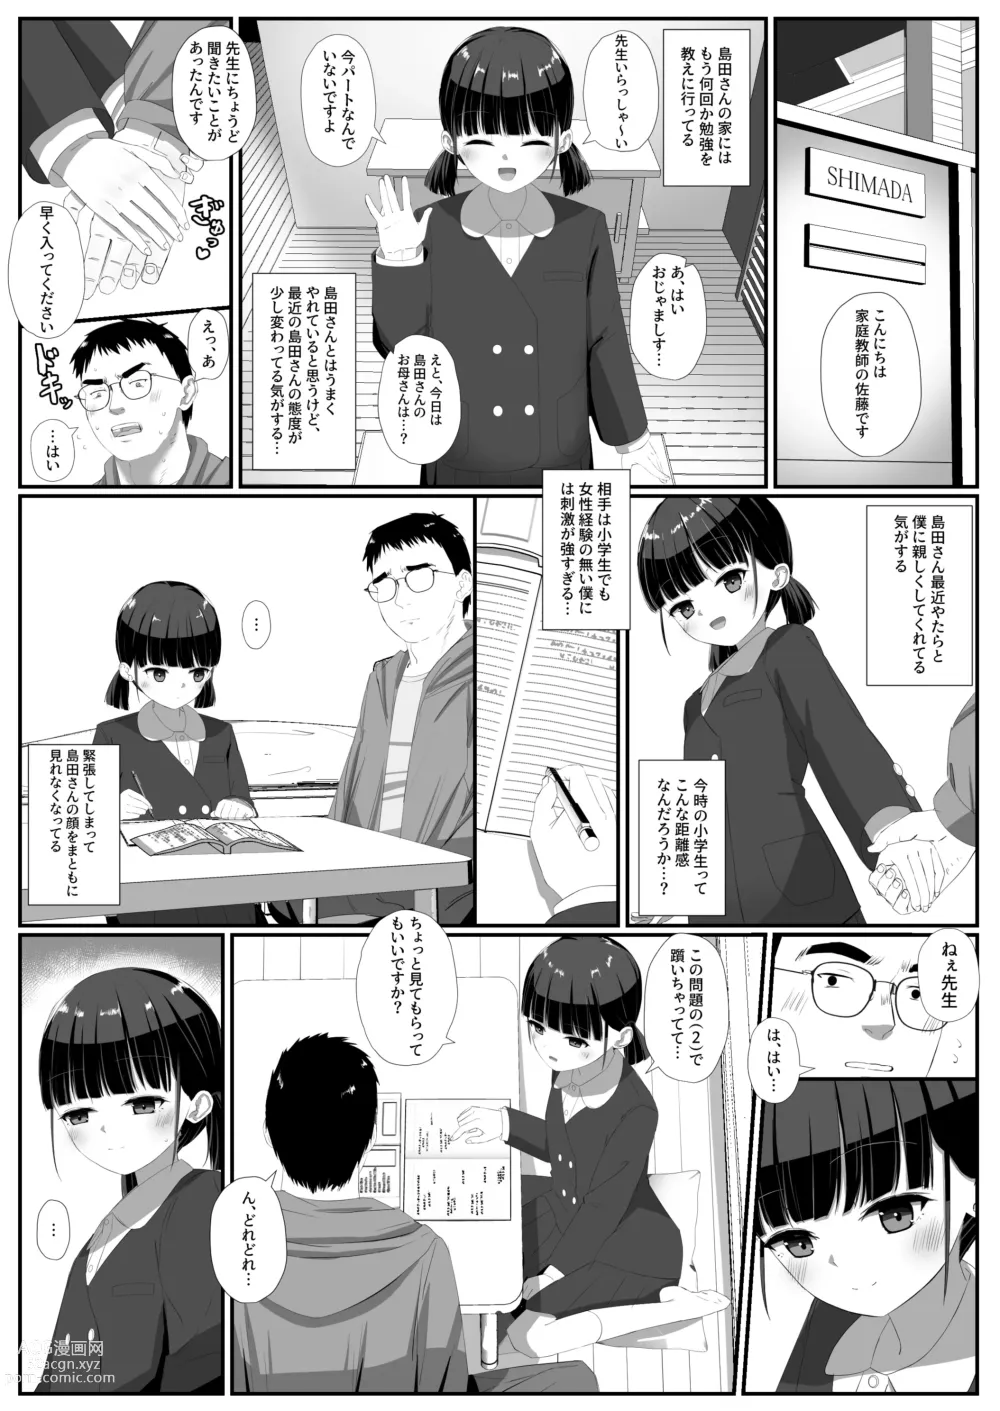 Page 5 of doujinshi Shimada-san wa Yuutousei